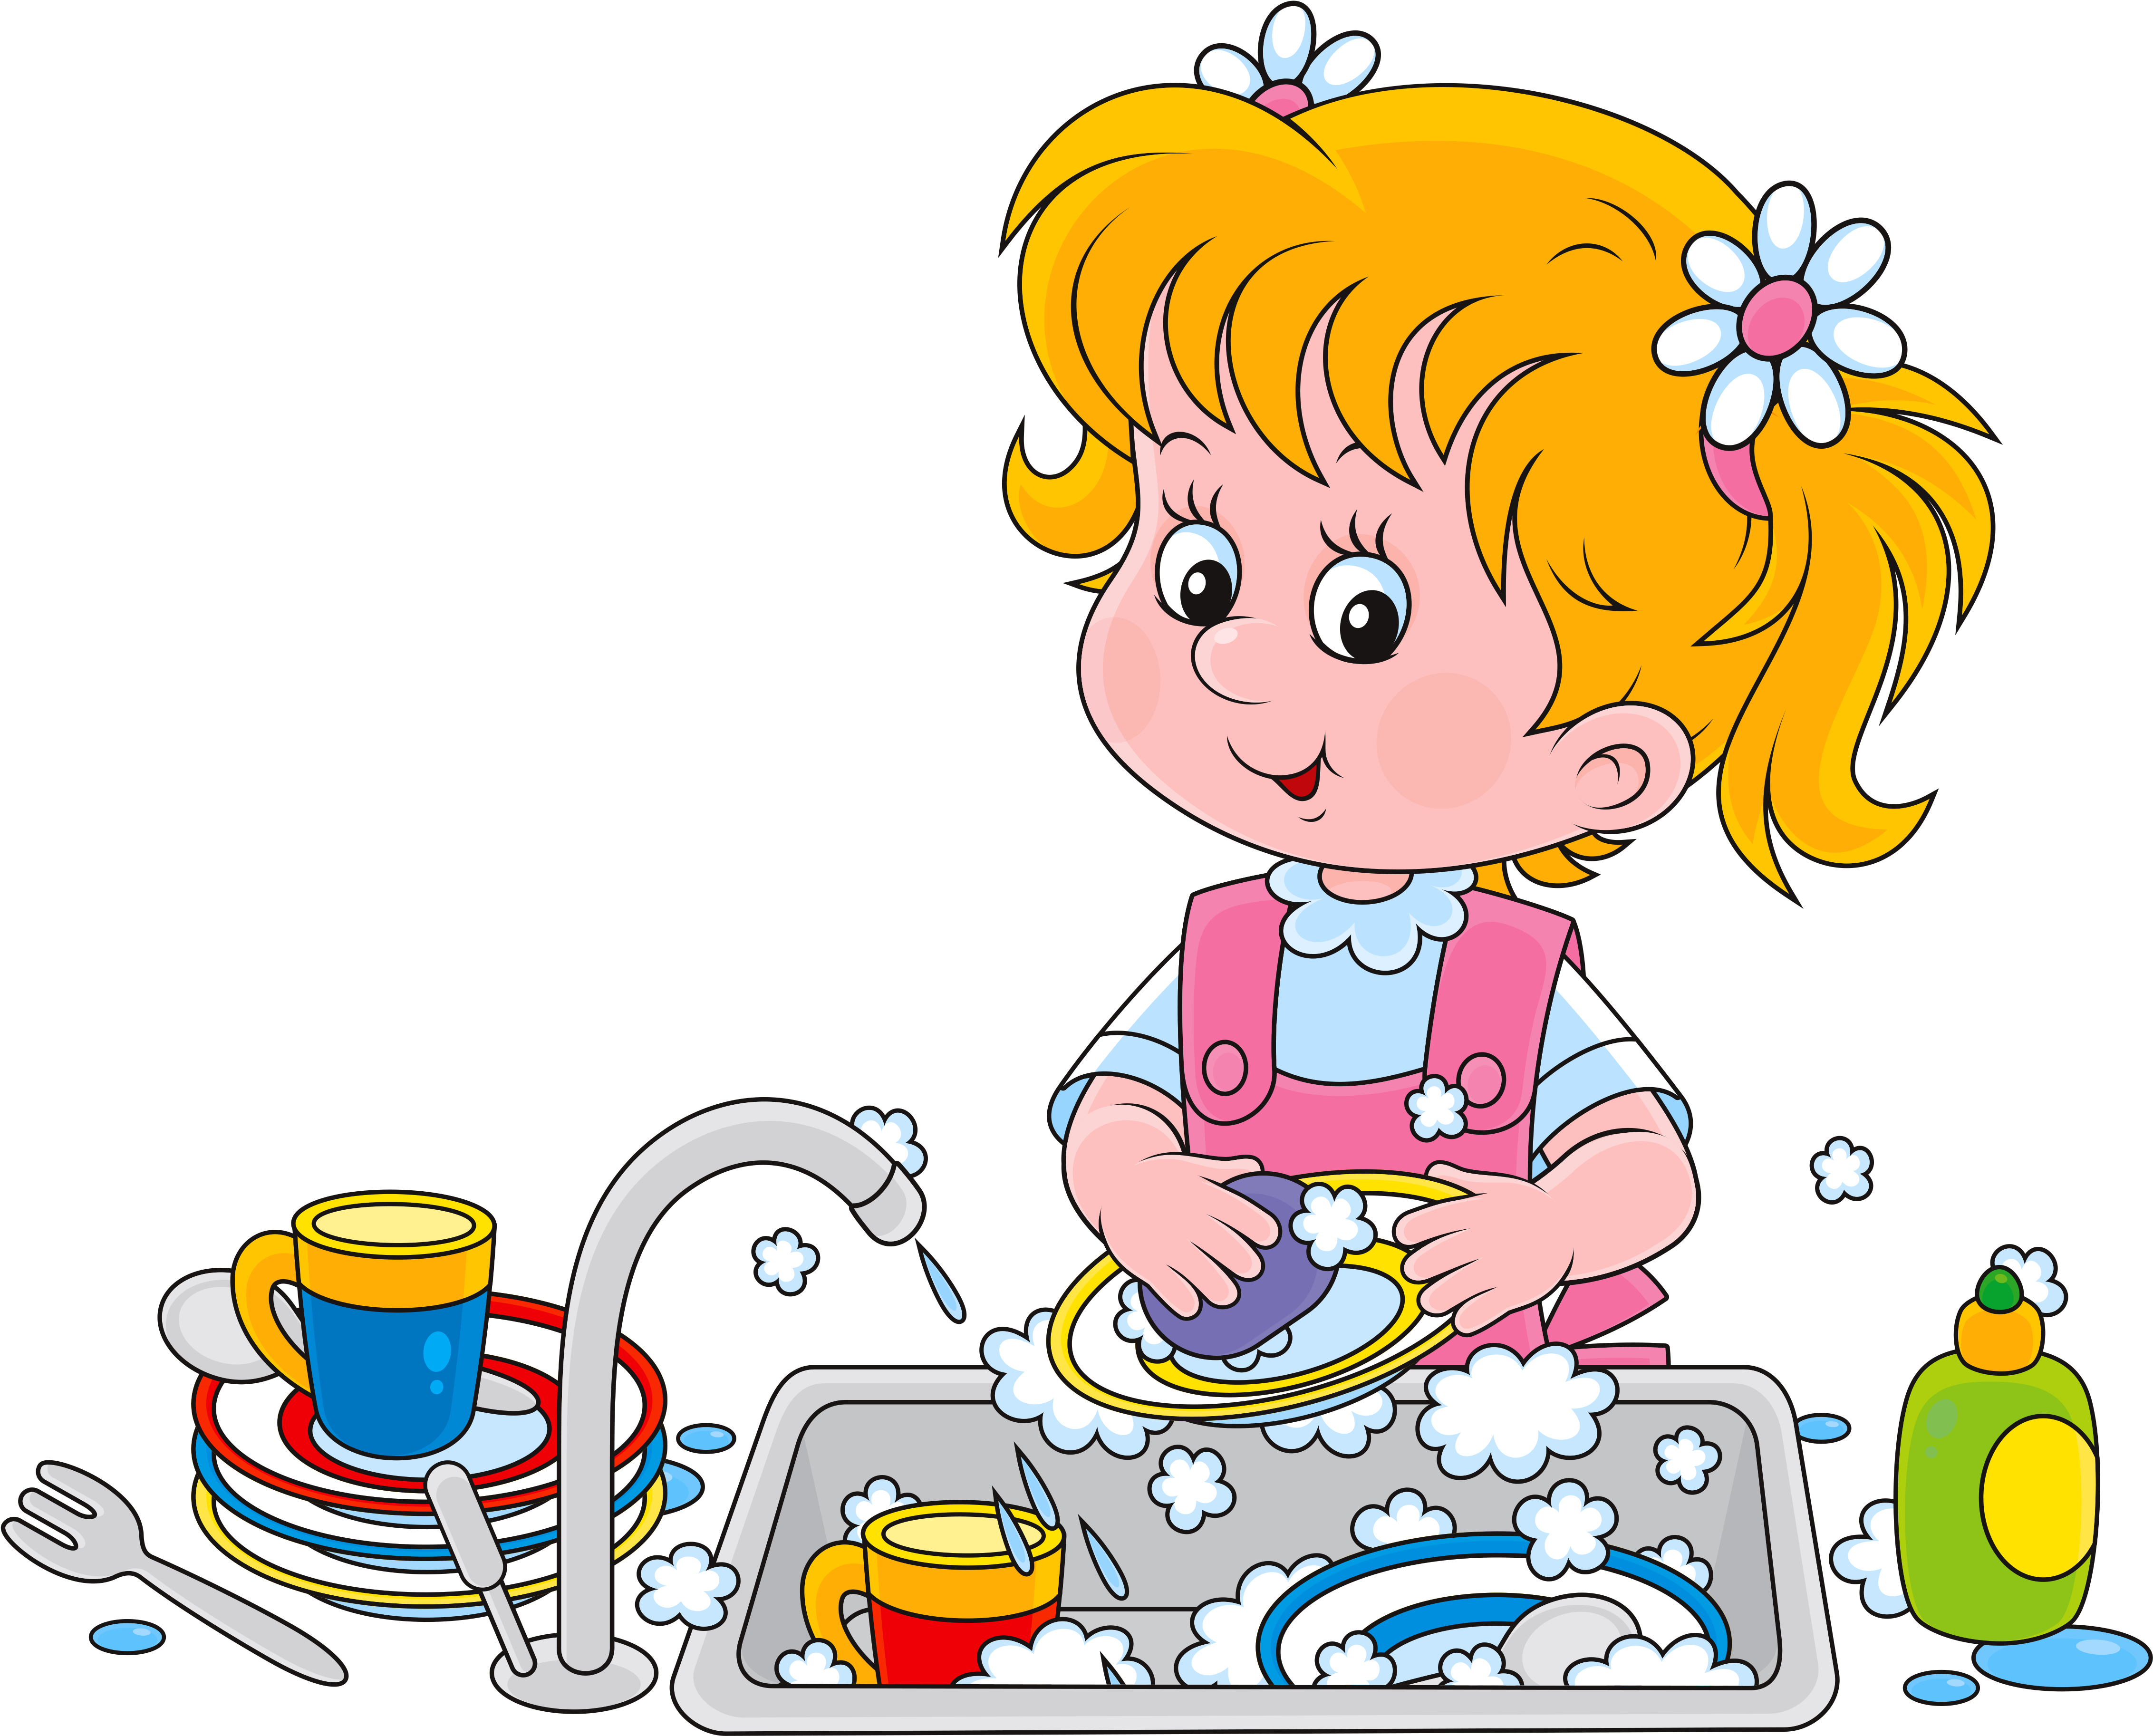 Няня моет посуду. Дети мамины помощники. Мытье посуды для детей. Девочка моет посуду. Мытье посуды иллюстрации для детей.